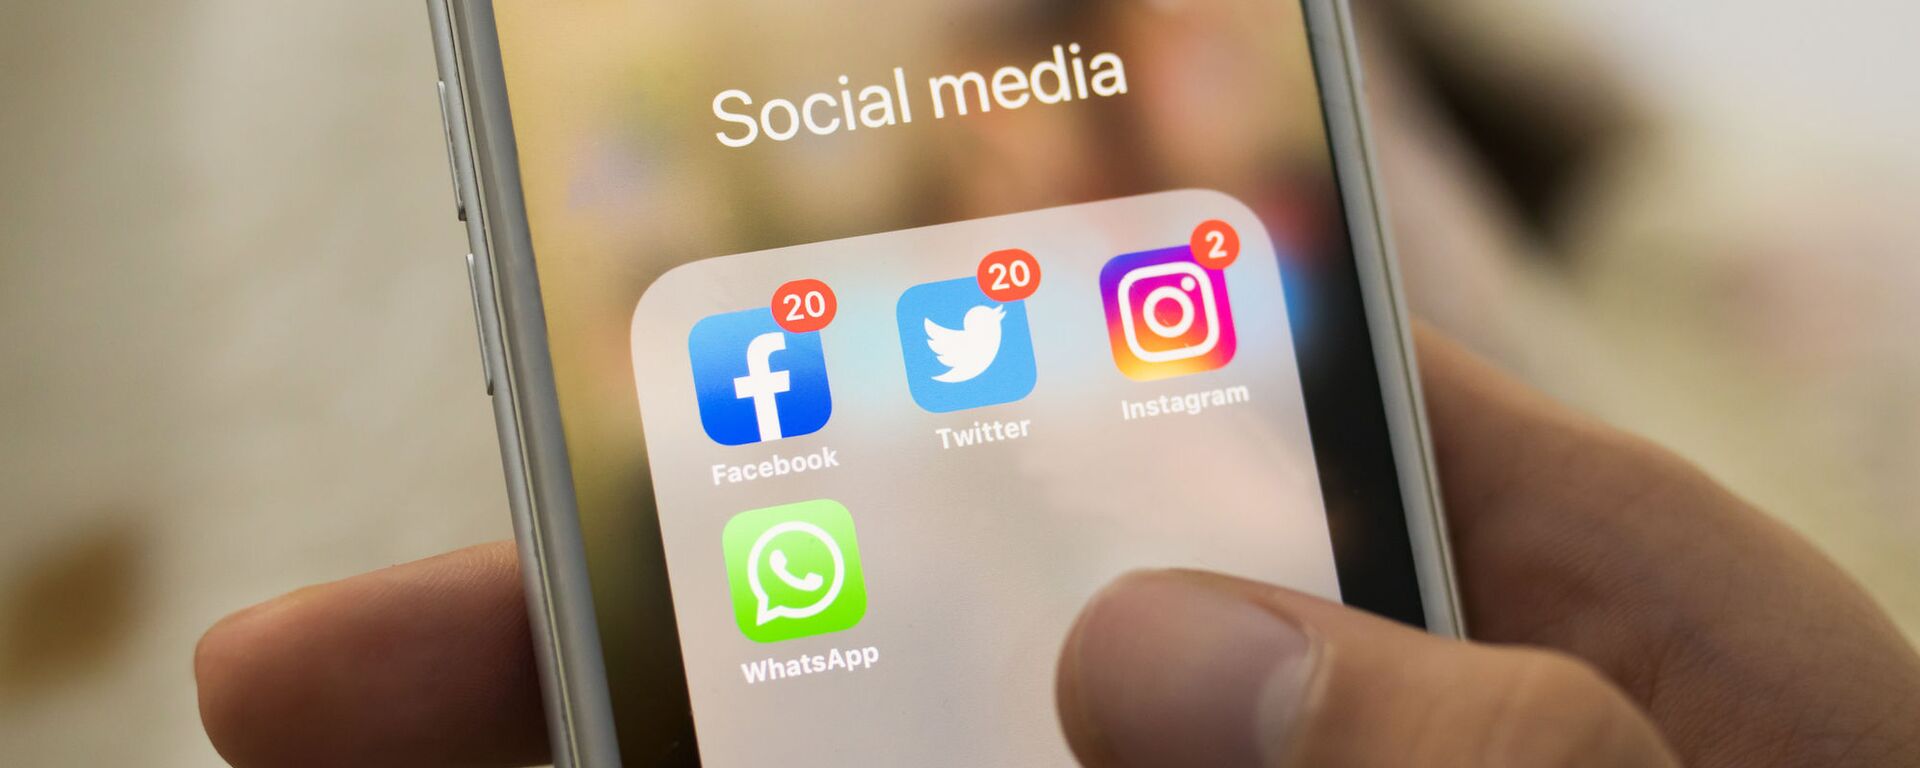 Biểu tượng Facebook, Twitter, Instagram, WhatsApp trên màn hình điện thoại thông minh - Sputnik Việt Nam, 1920, 04.05.2021